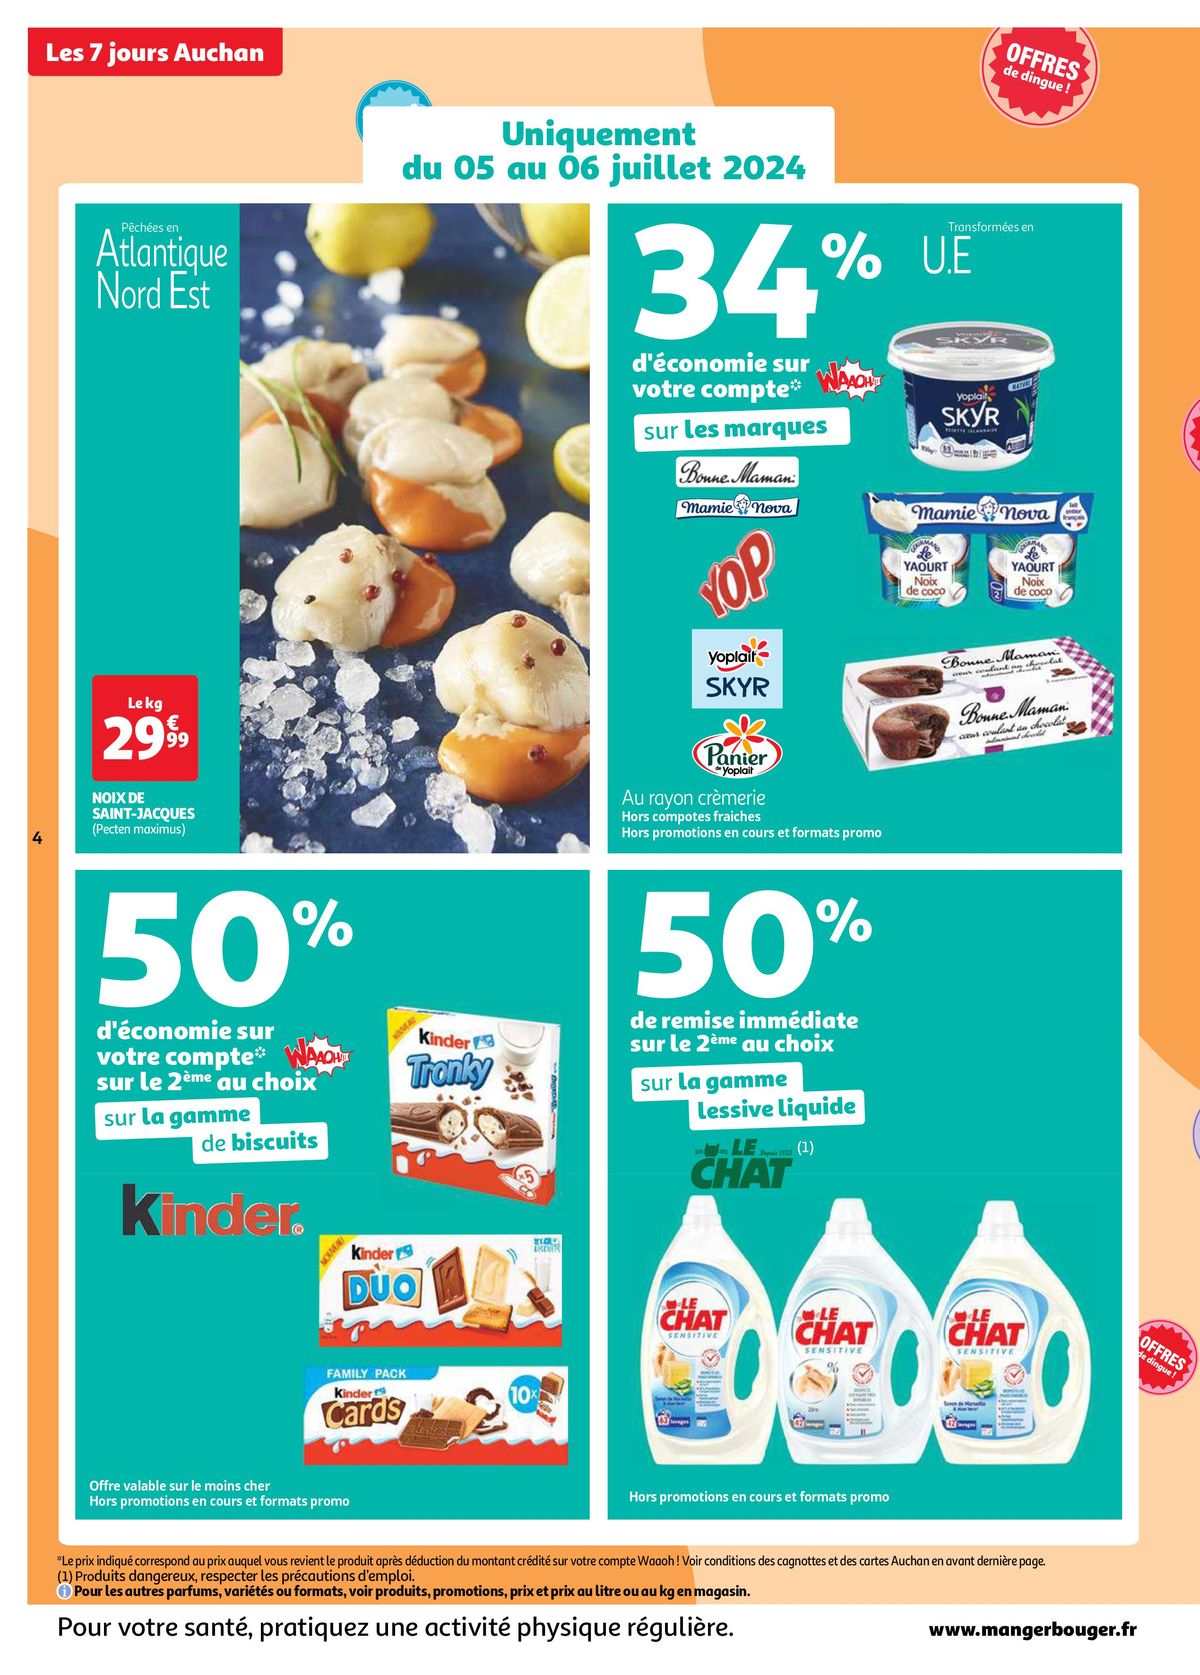 Catalogue Les 7 jours Auchan, c'est maintenant !, page 00004